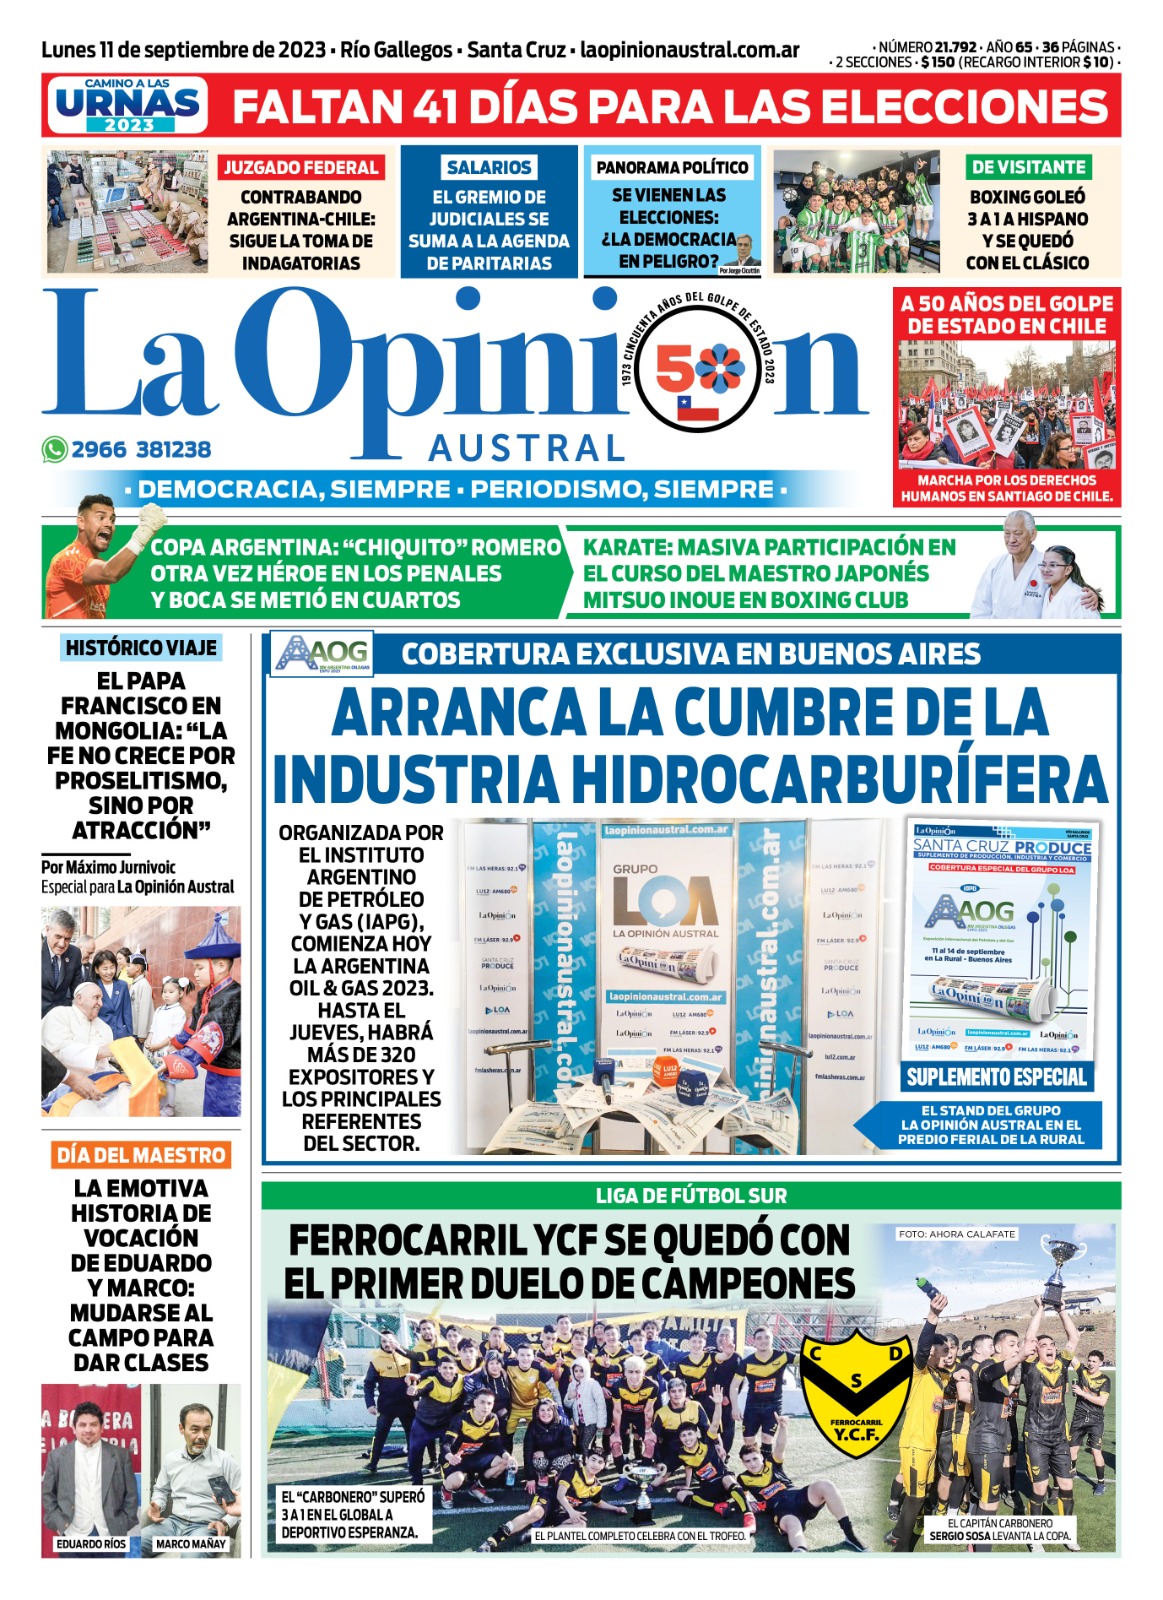 Diario La Opinión Austral tapa edición impresa del lunes 11 de septiembre de 2023, Río Gallegos, Santa Cruz, Argentina